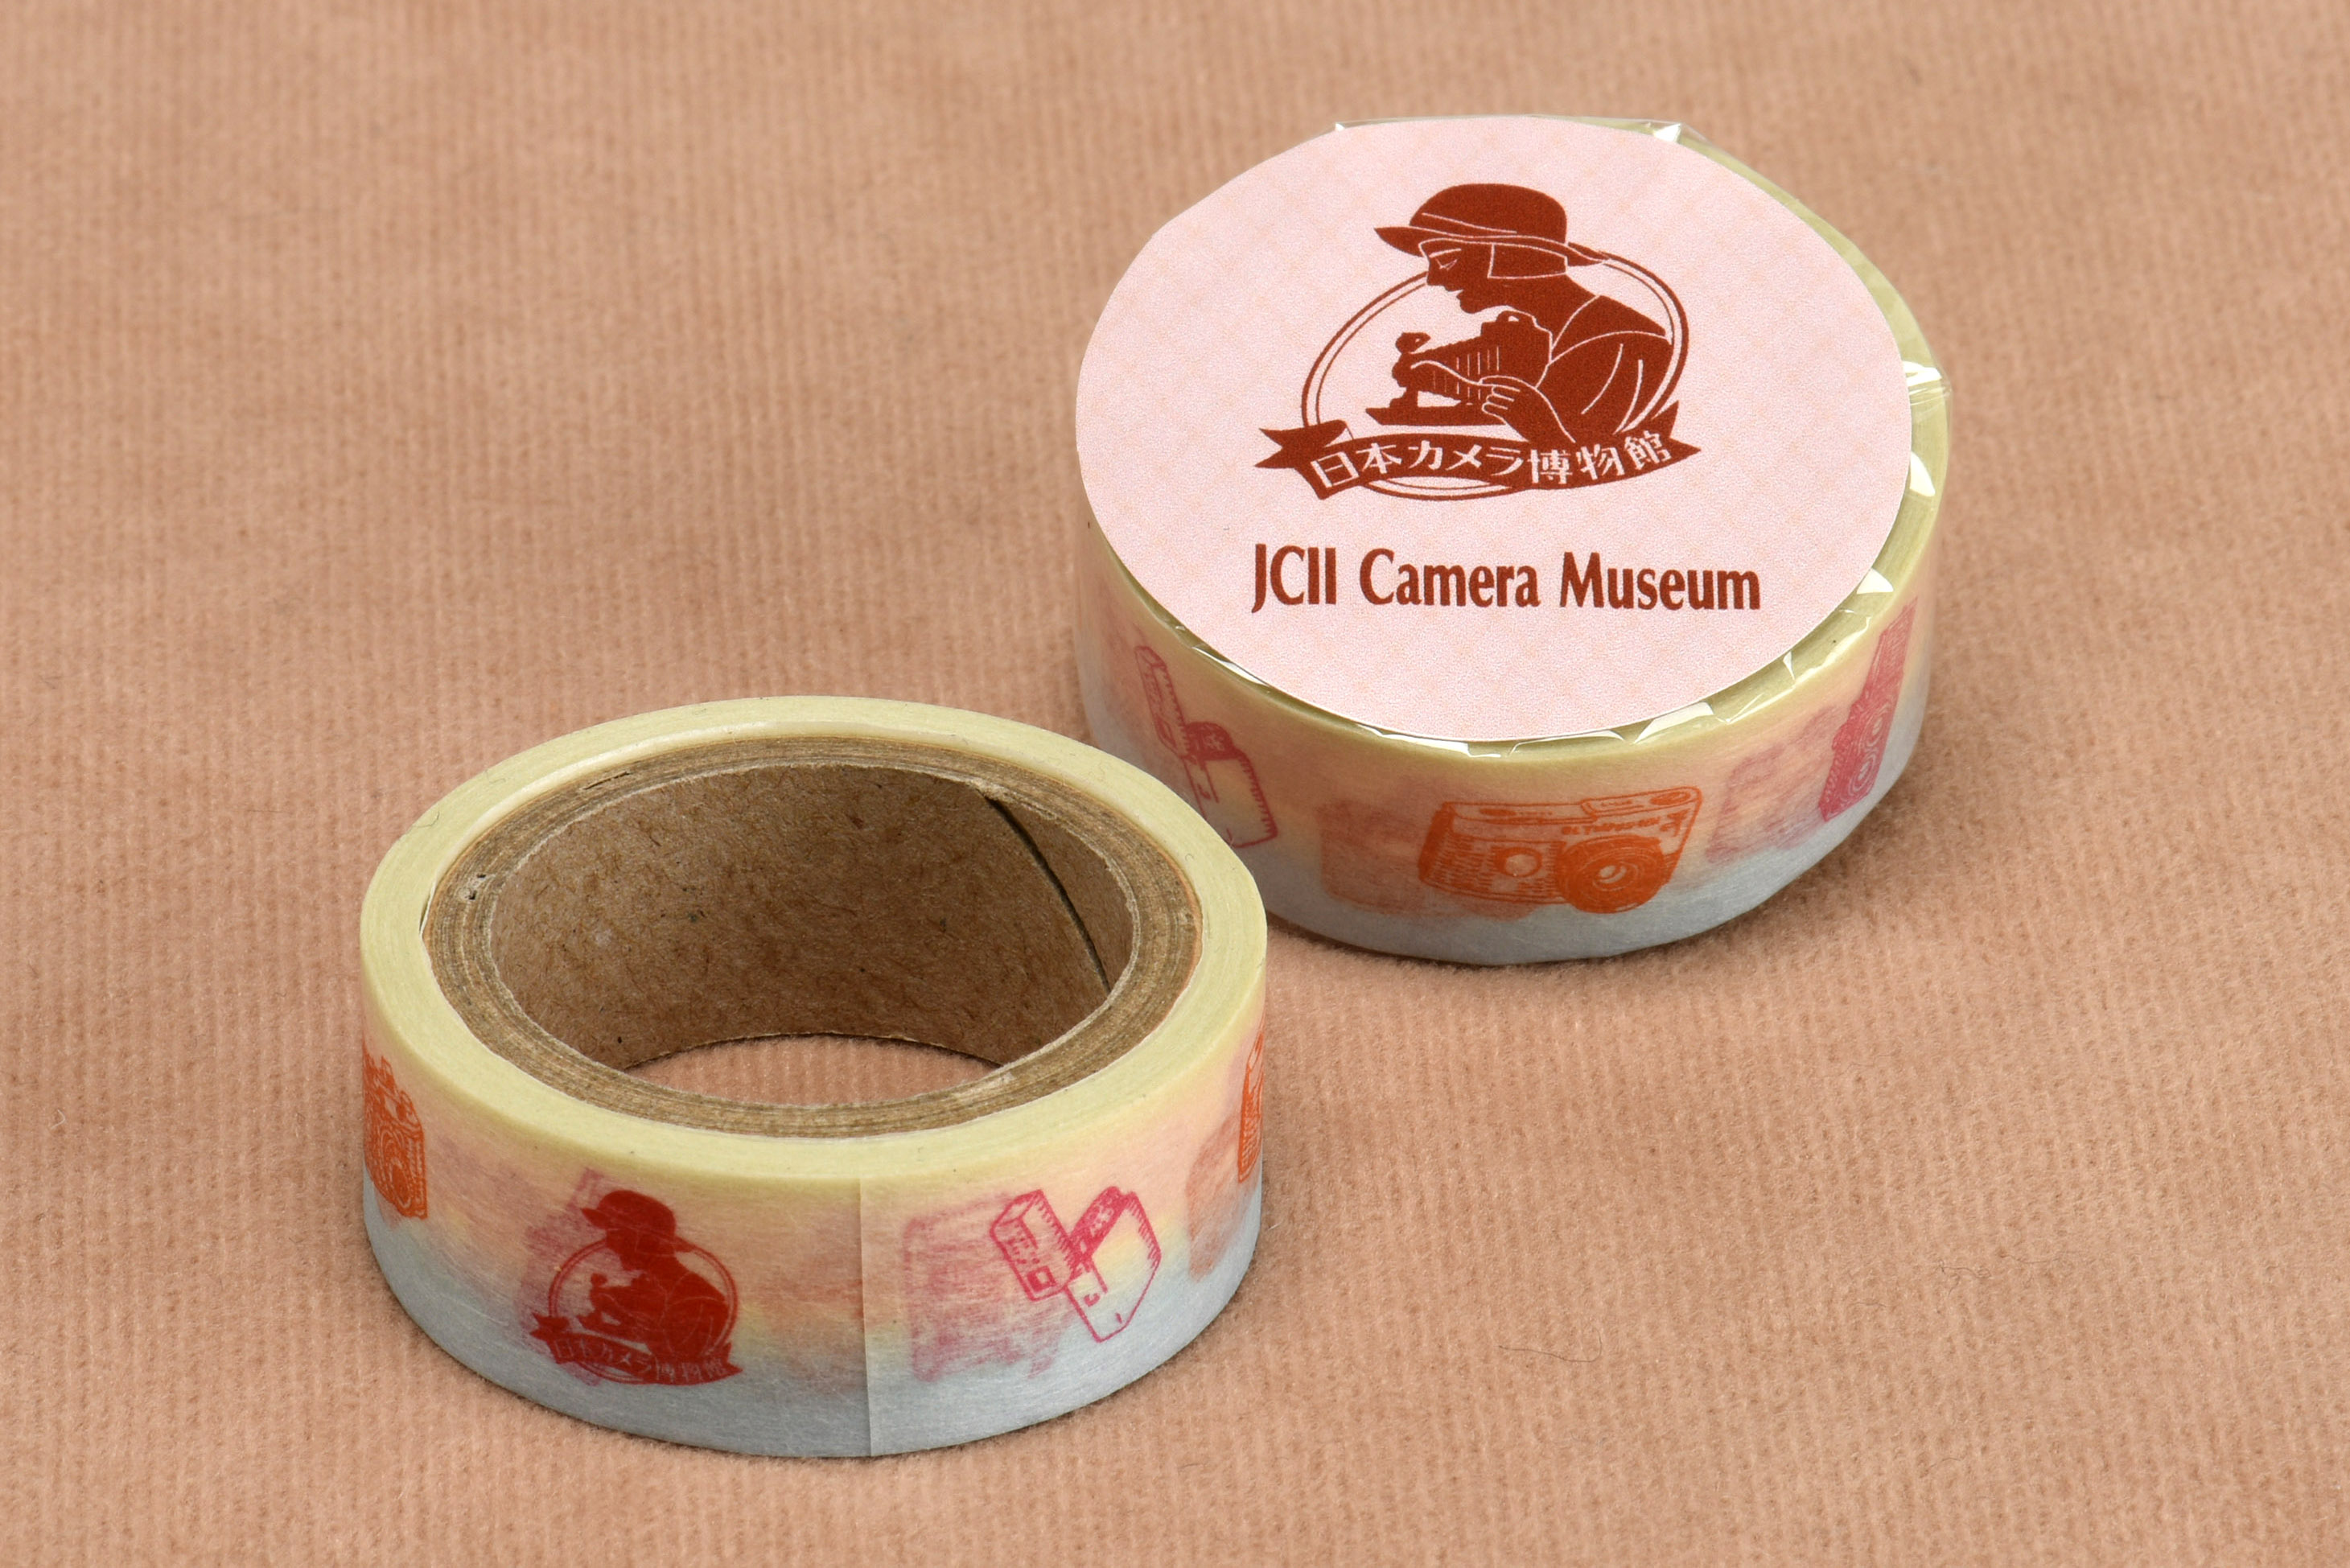 日本カメラ博物館 Jcii Camera Museum オリジナル マスキングテープ カラー